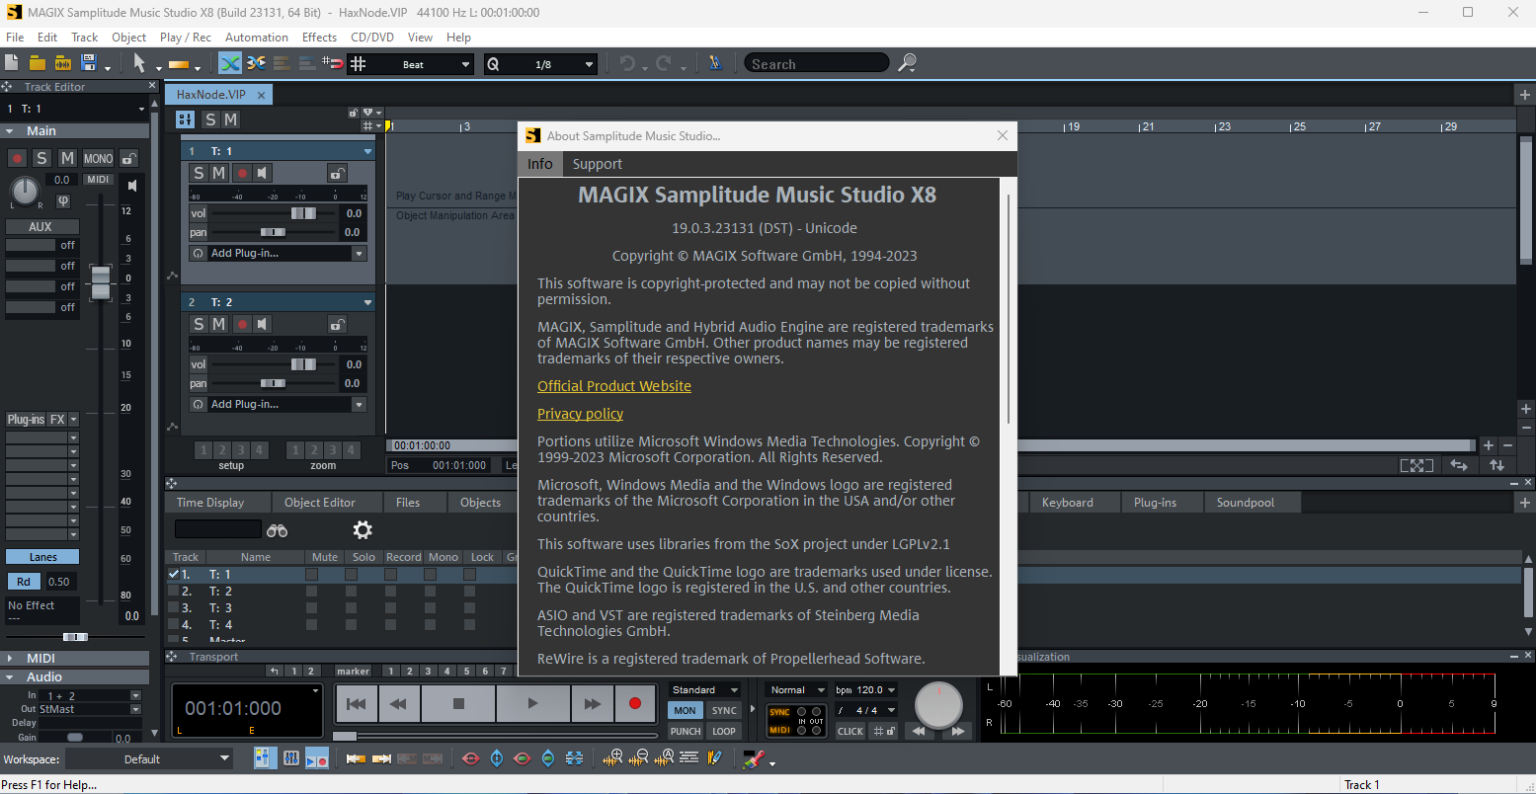 MAGIX Samplitude Music Studio X8